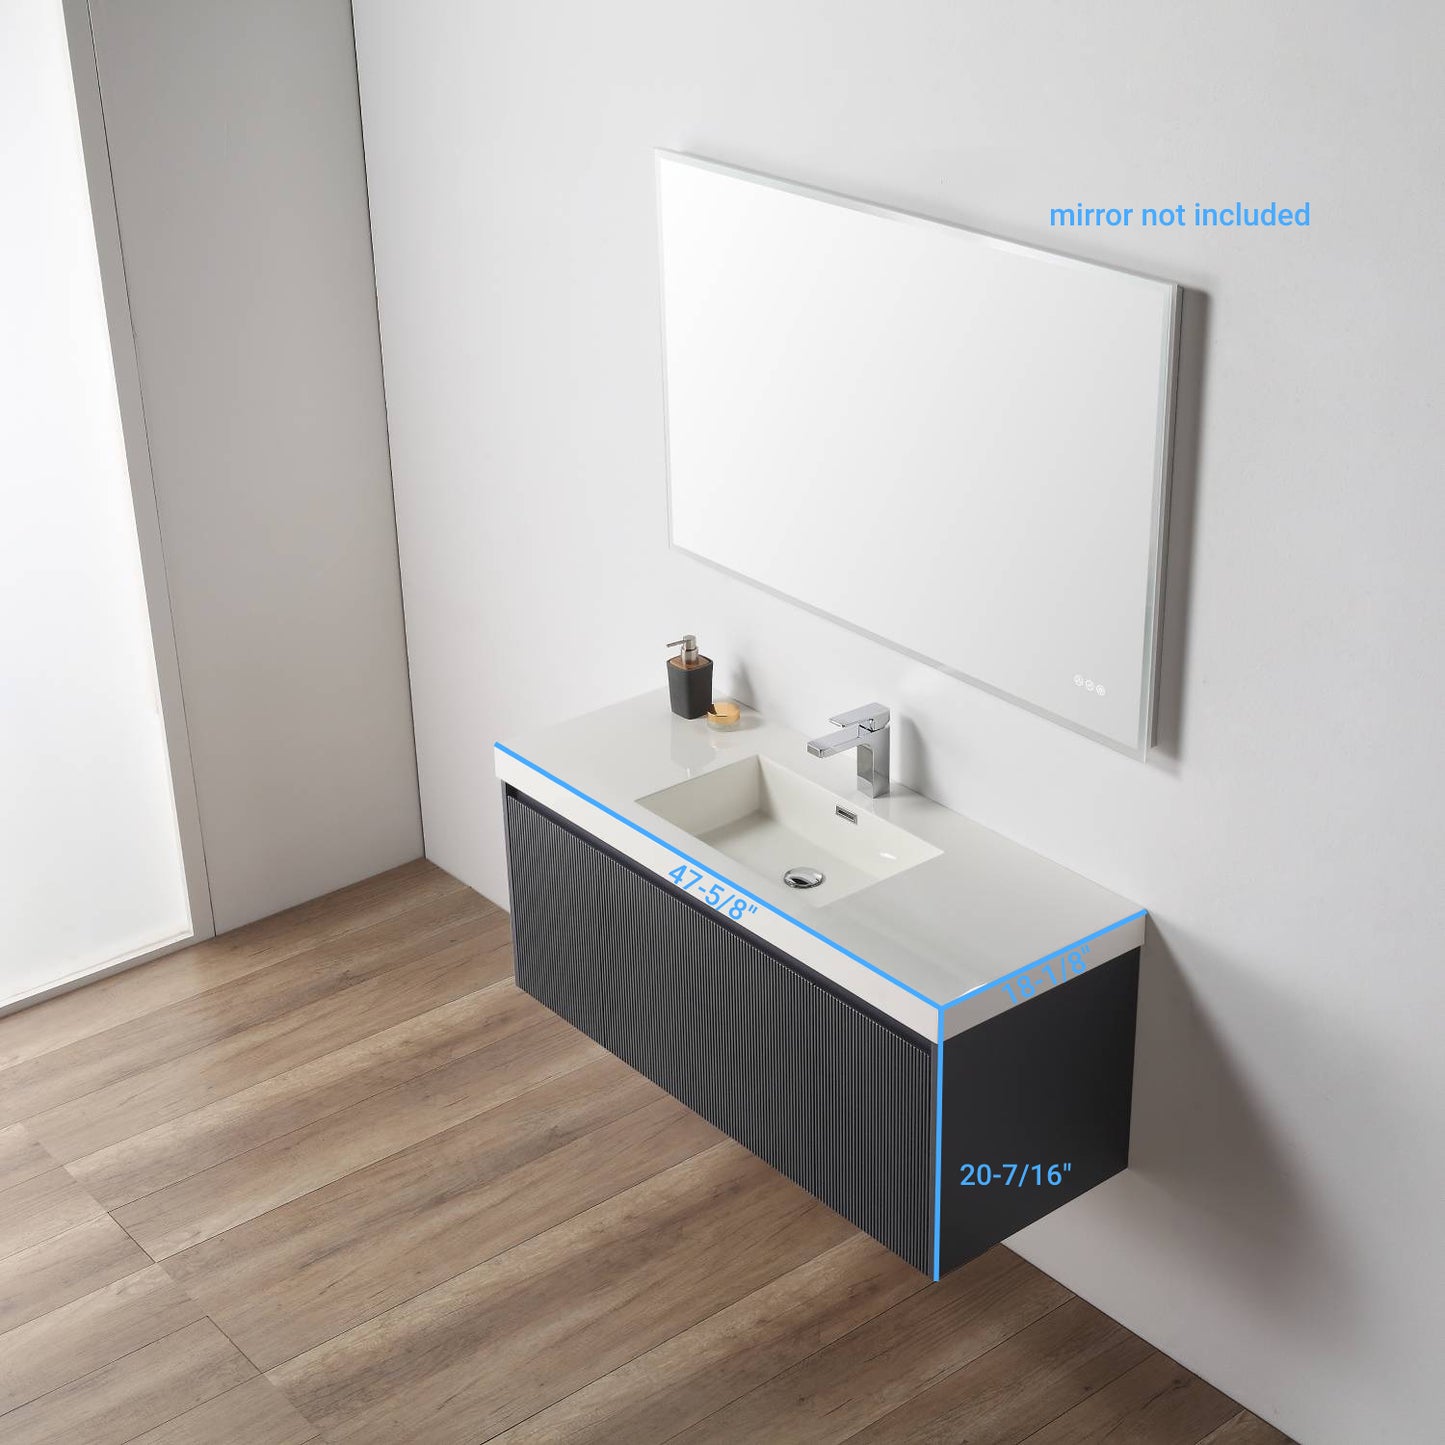 Positano 48" Floating Bathroom Vanity with Single Acrylic Sink - Night Blue